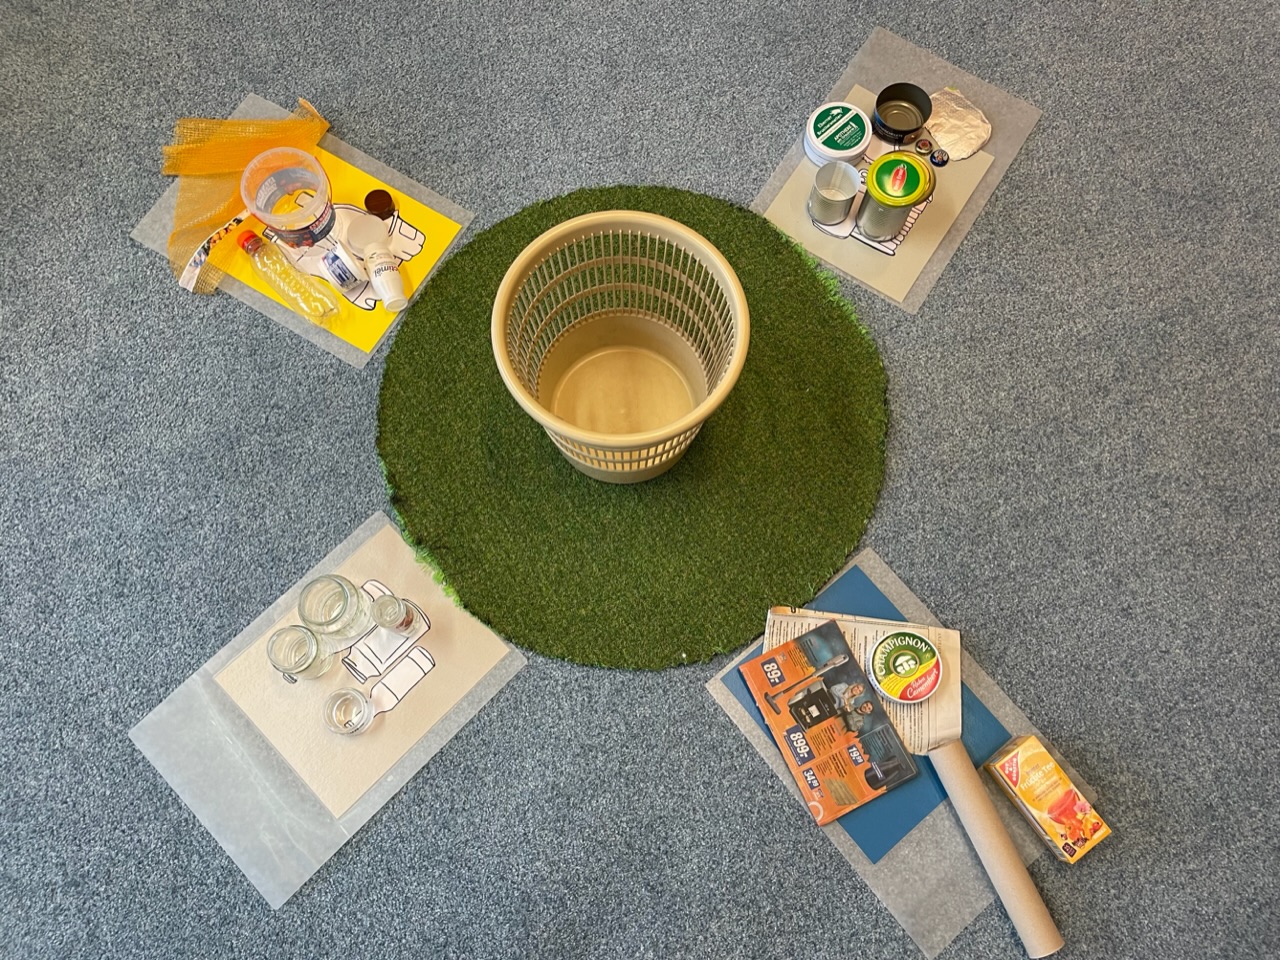 Bild zum Schritt 18 für das Bastel- und DIY-Abenteuer für Kinder: 'Nun wird der Müll auf die Vorlagen sortiert. Bei einem...'